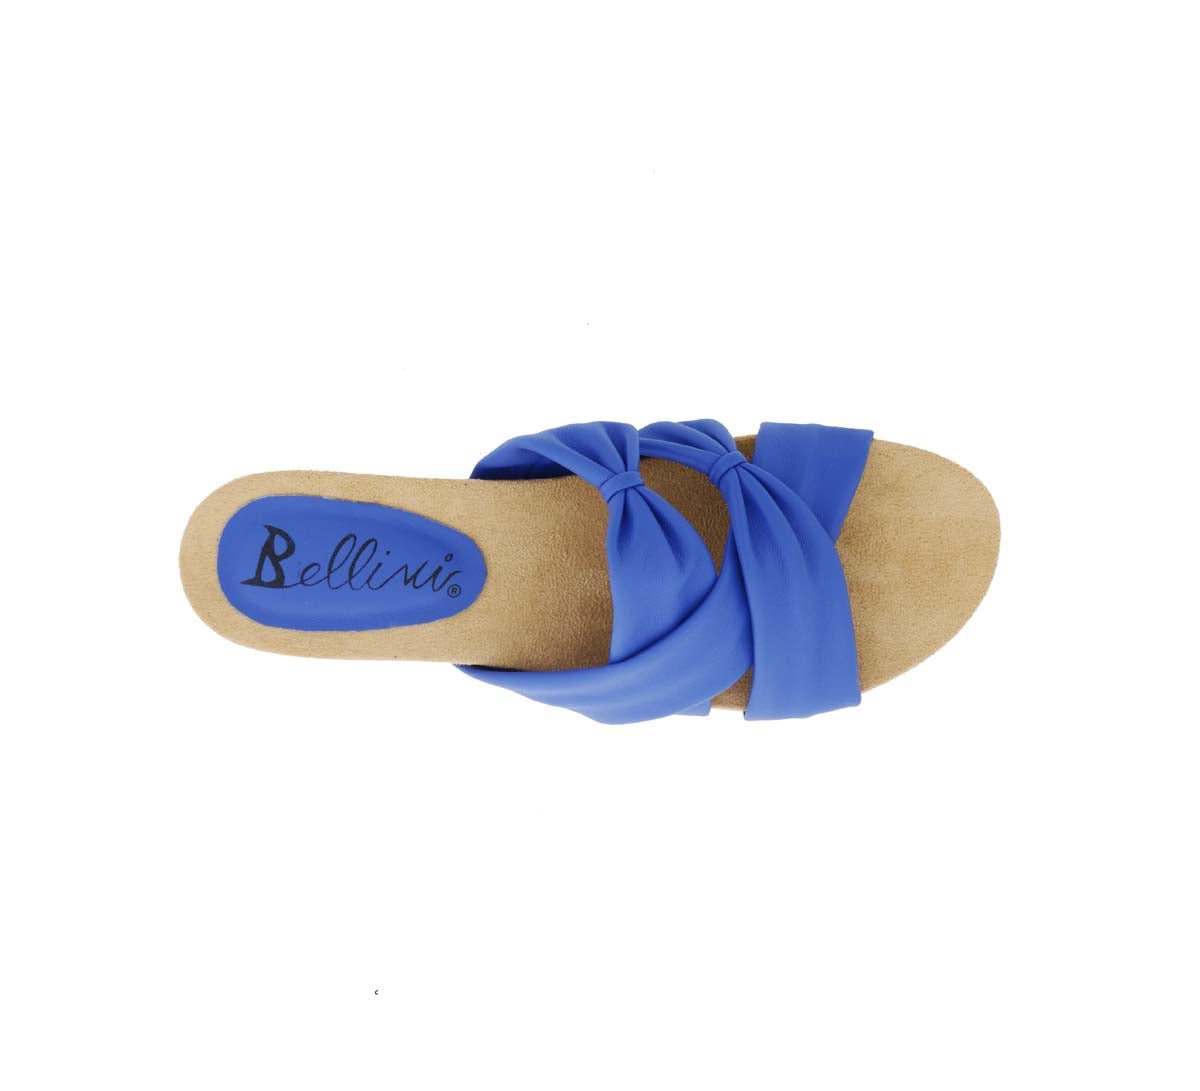 BELLINI NENE WOMEN IN BLUE SYNTHETIC - TLW Shoes